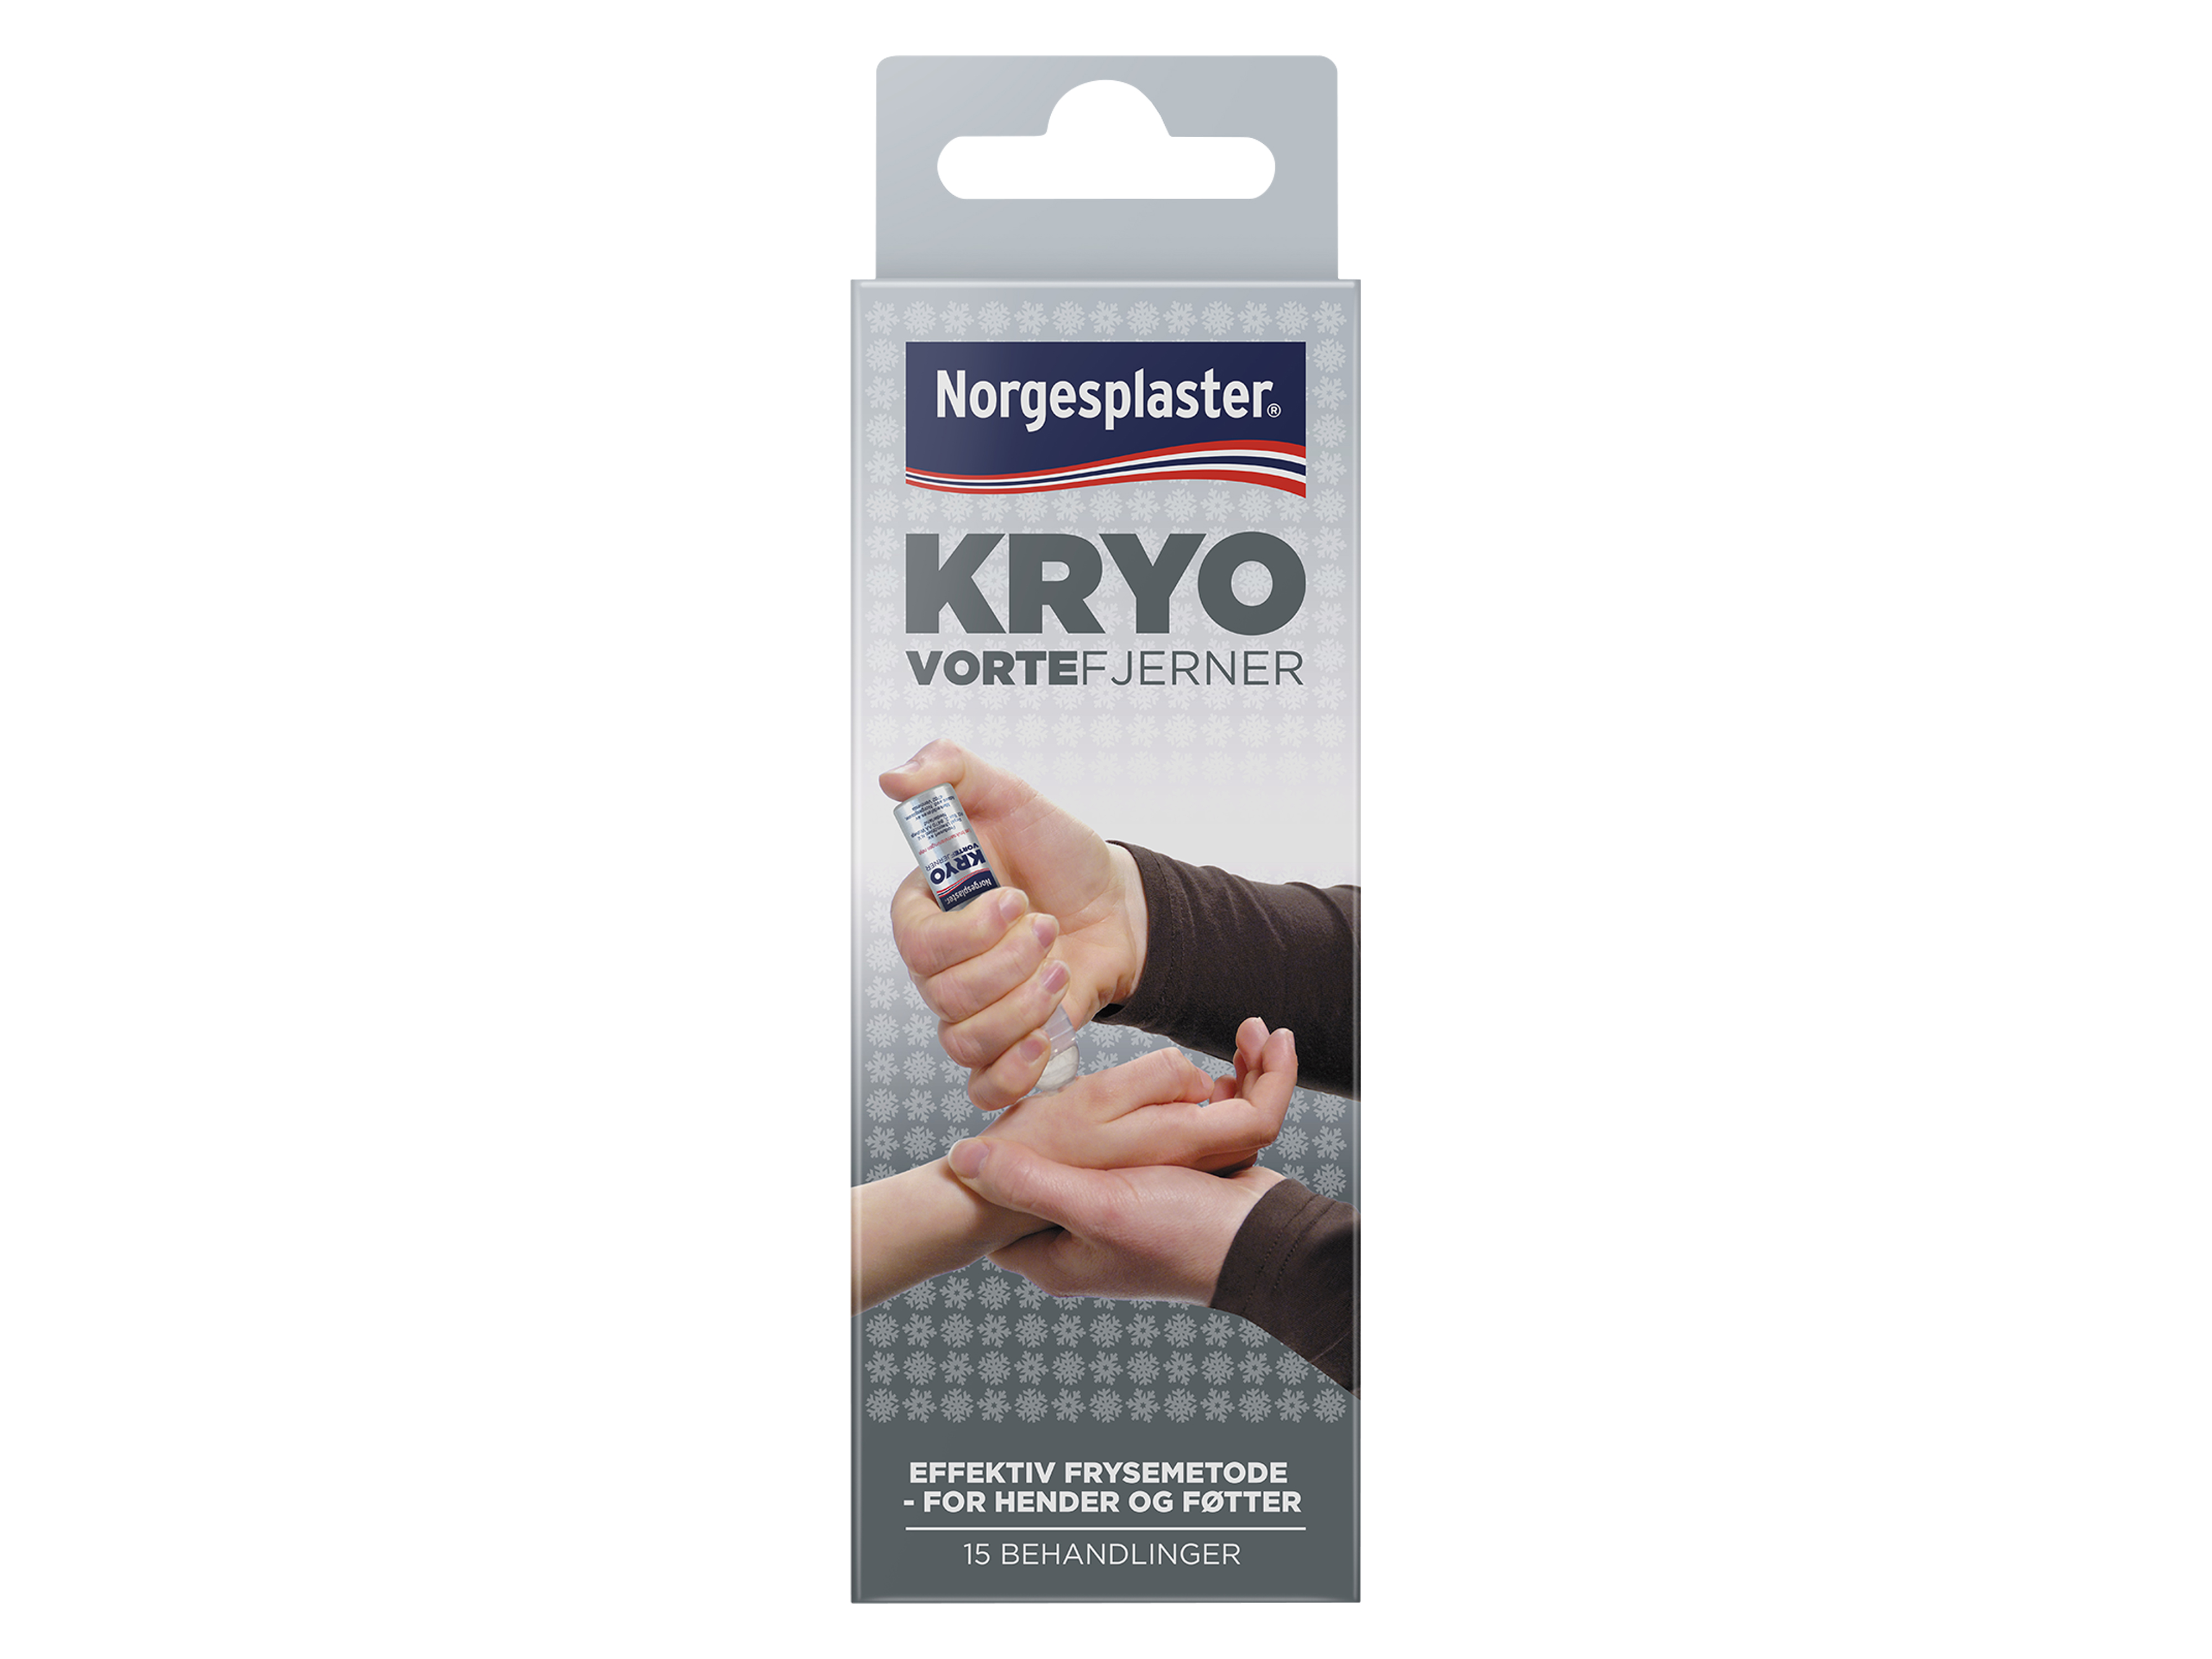 Norgesplaster Kryo vortefjerner, 38 ml